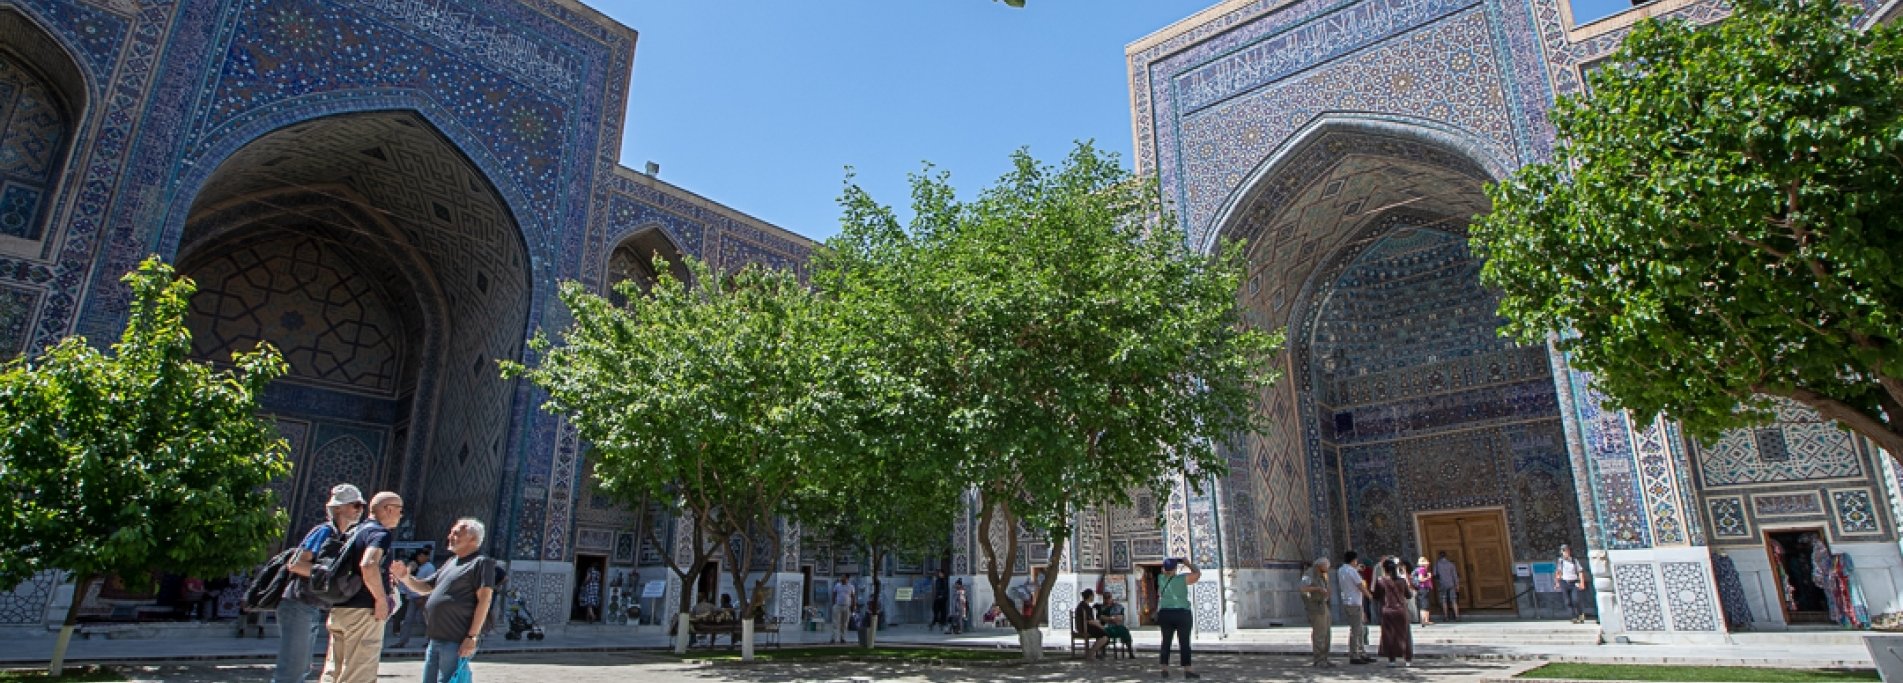 One week in majestic Uzbekistan - Immersion in medieval Uzbekistan